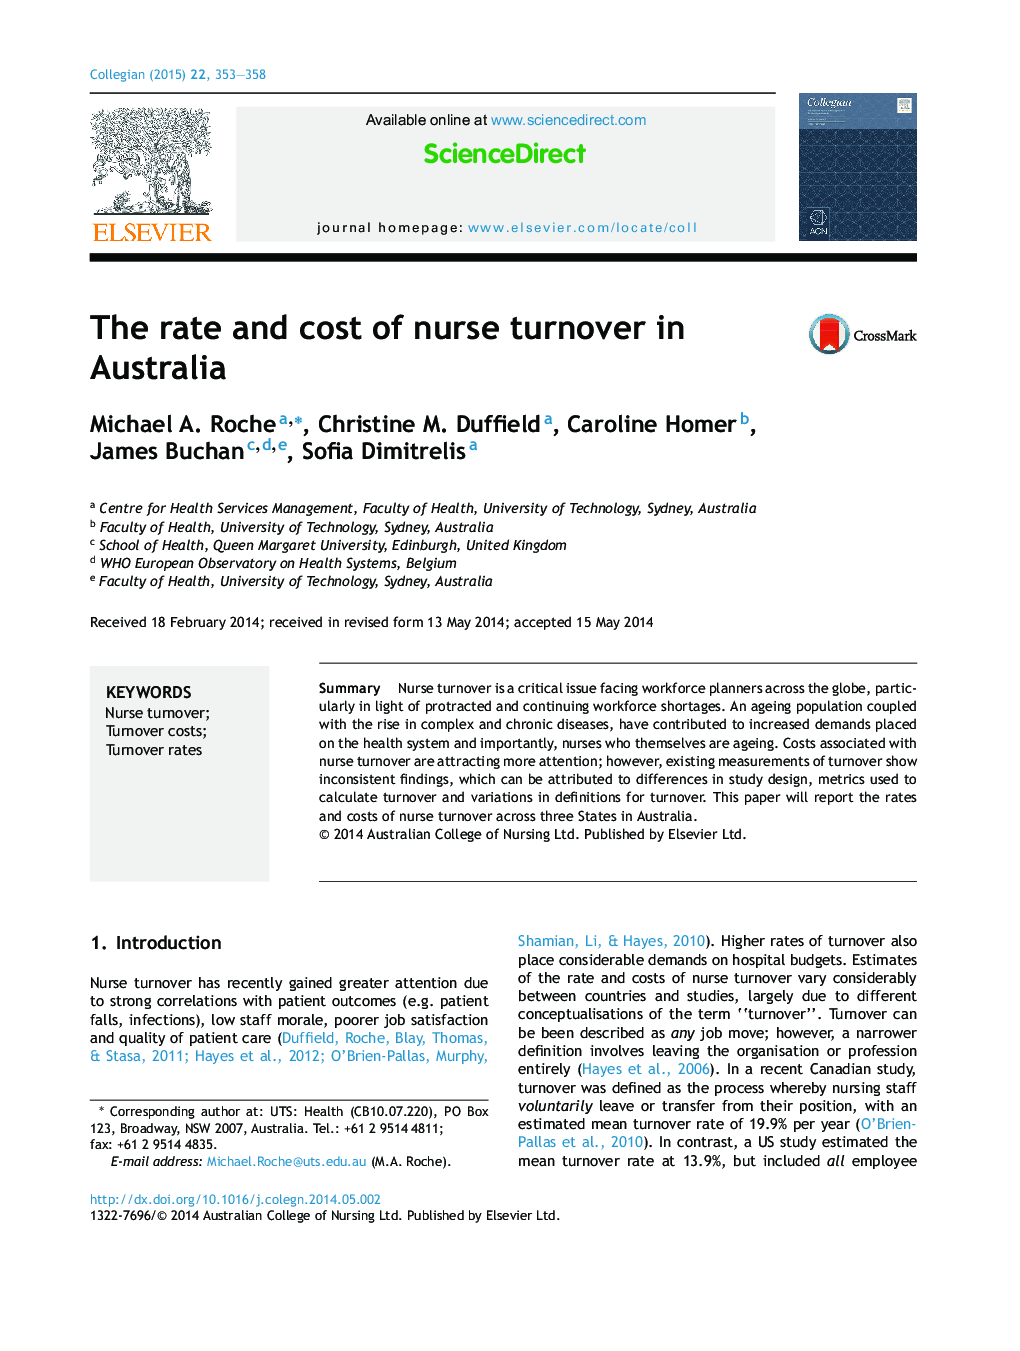 نرخ و هزینه گردش در پرستار در استرالیا 